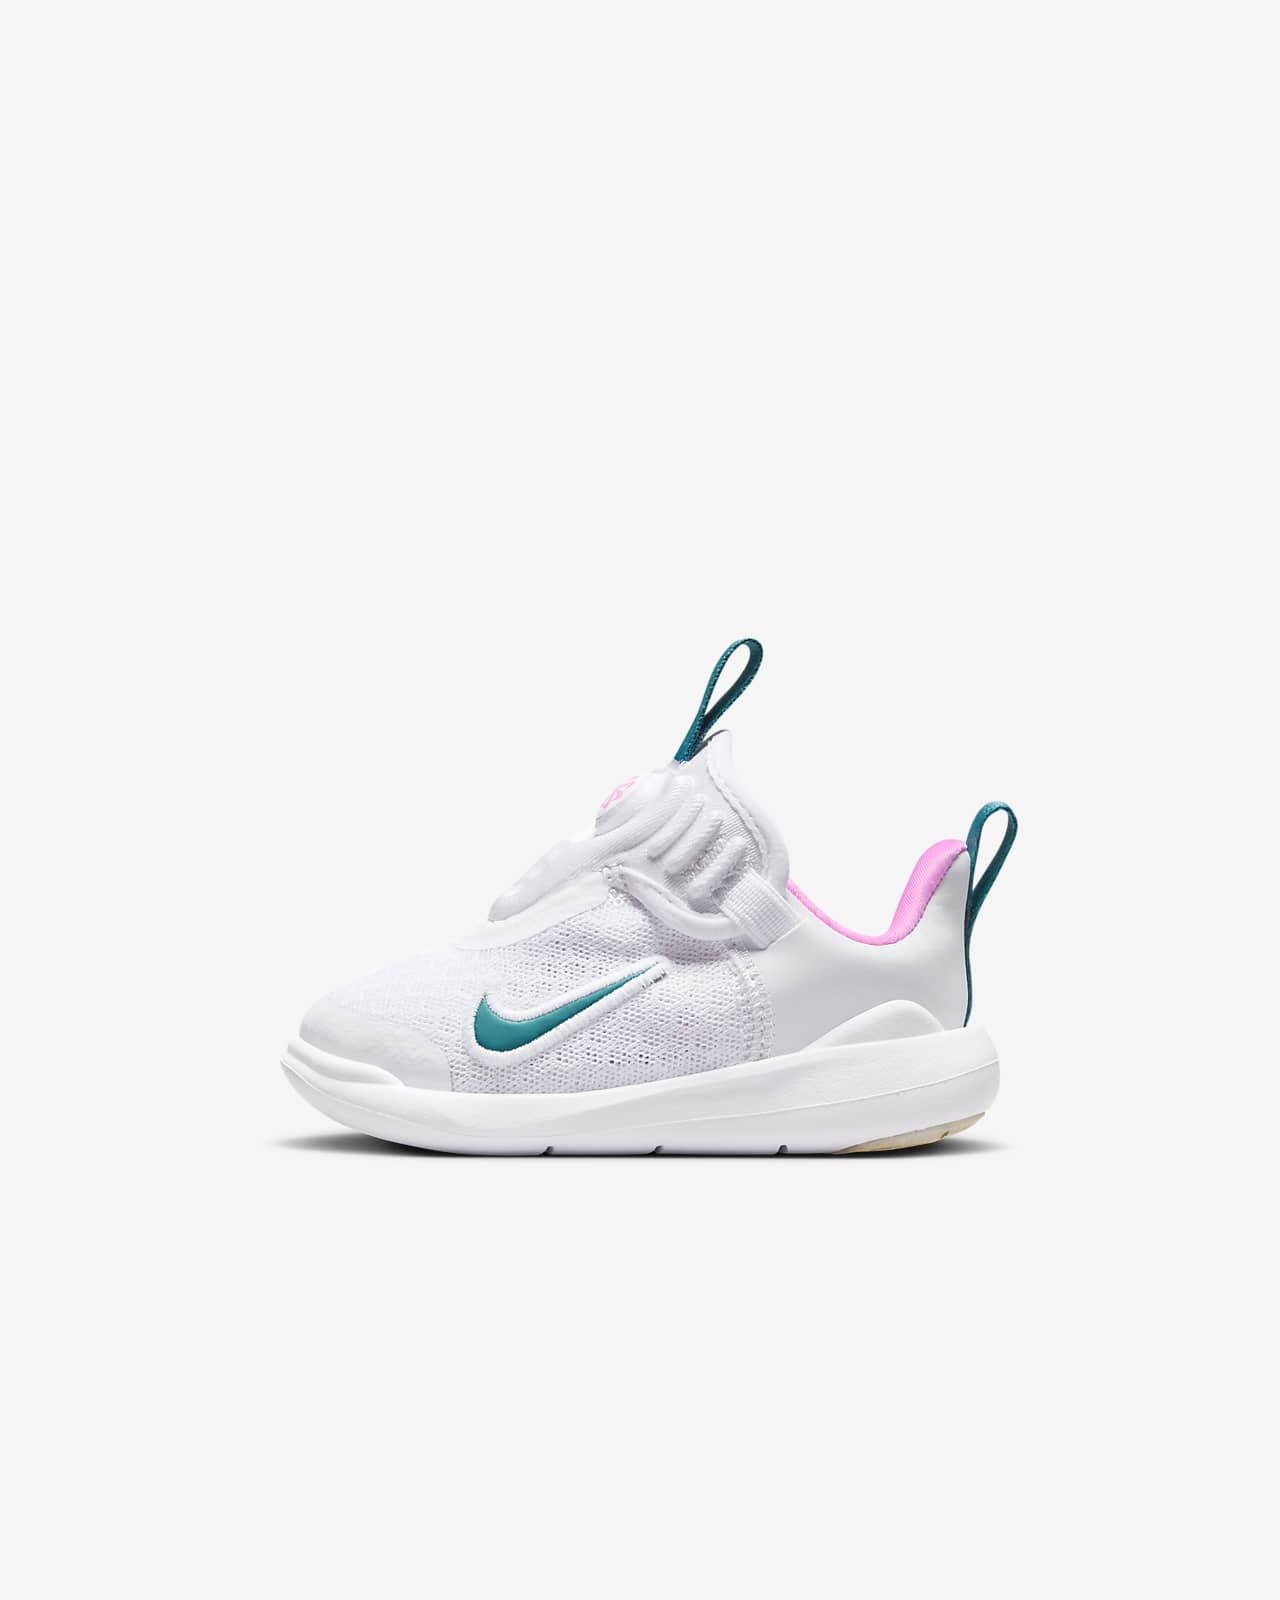 Nike E-Series 1.0 嬰幼兒鞋款